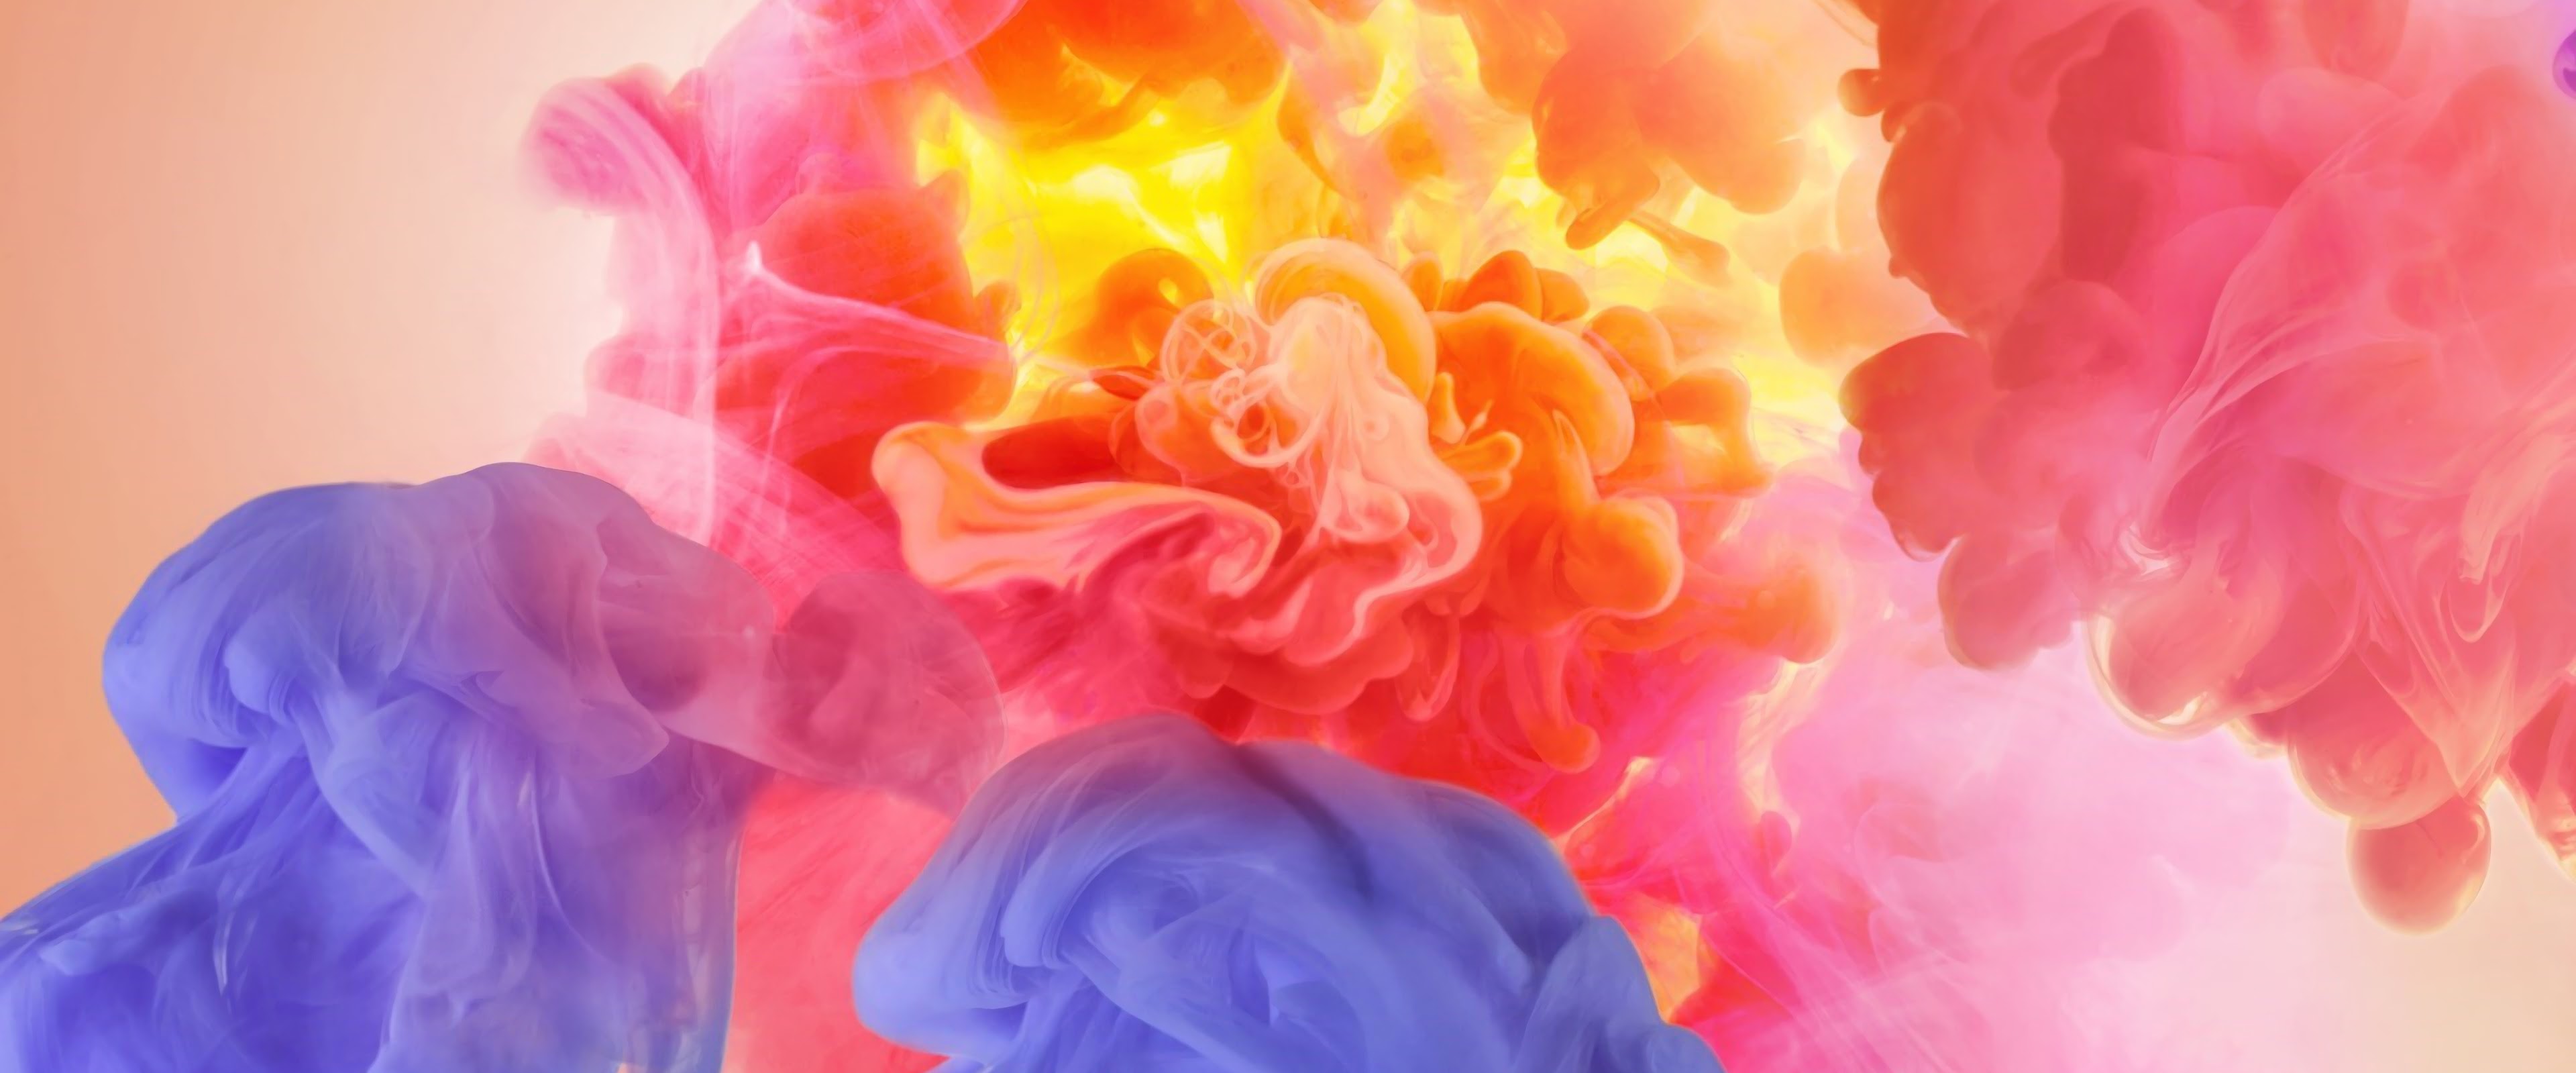 Colorful, Smoke, Abstract, 4K, #40 Wallpaper PC Desktop